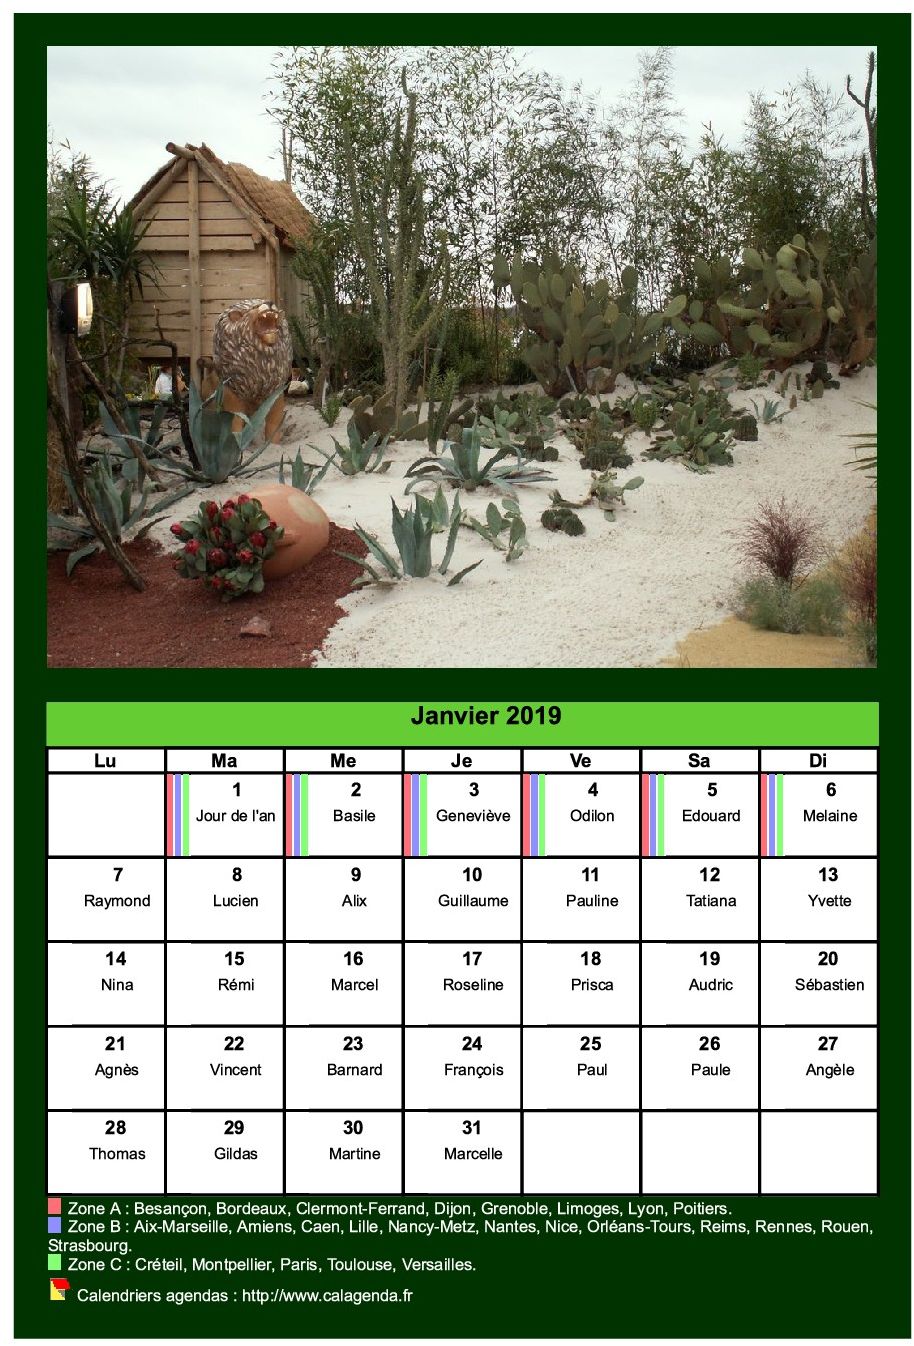 Calendrier mensuel 2019 avec une photo différente chaque mois